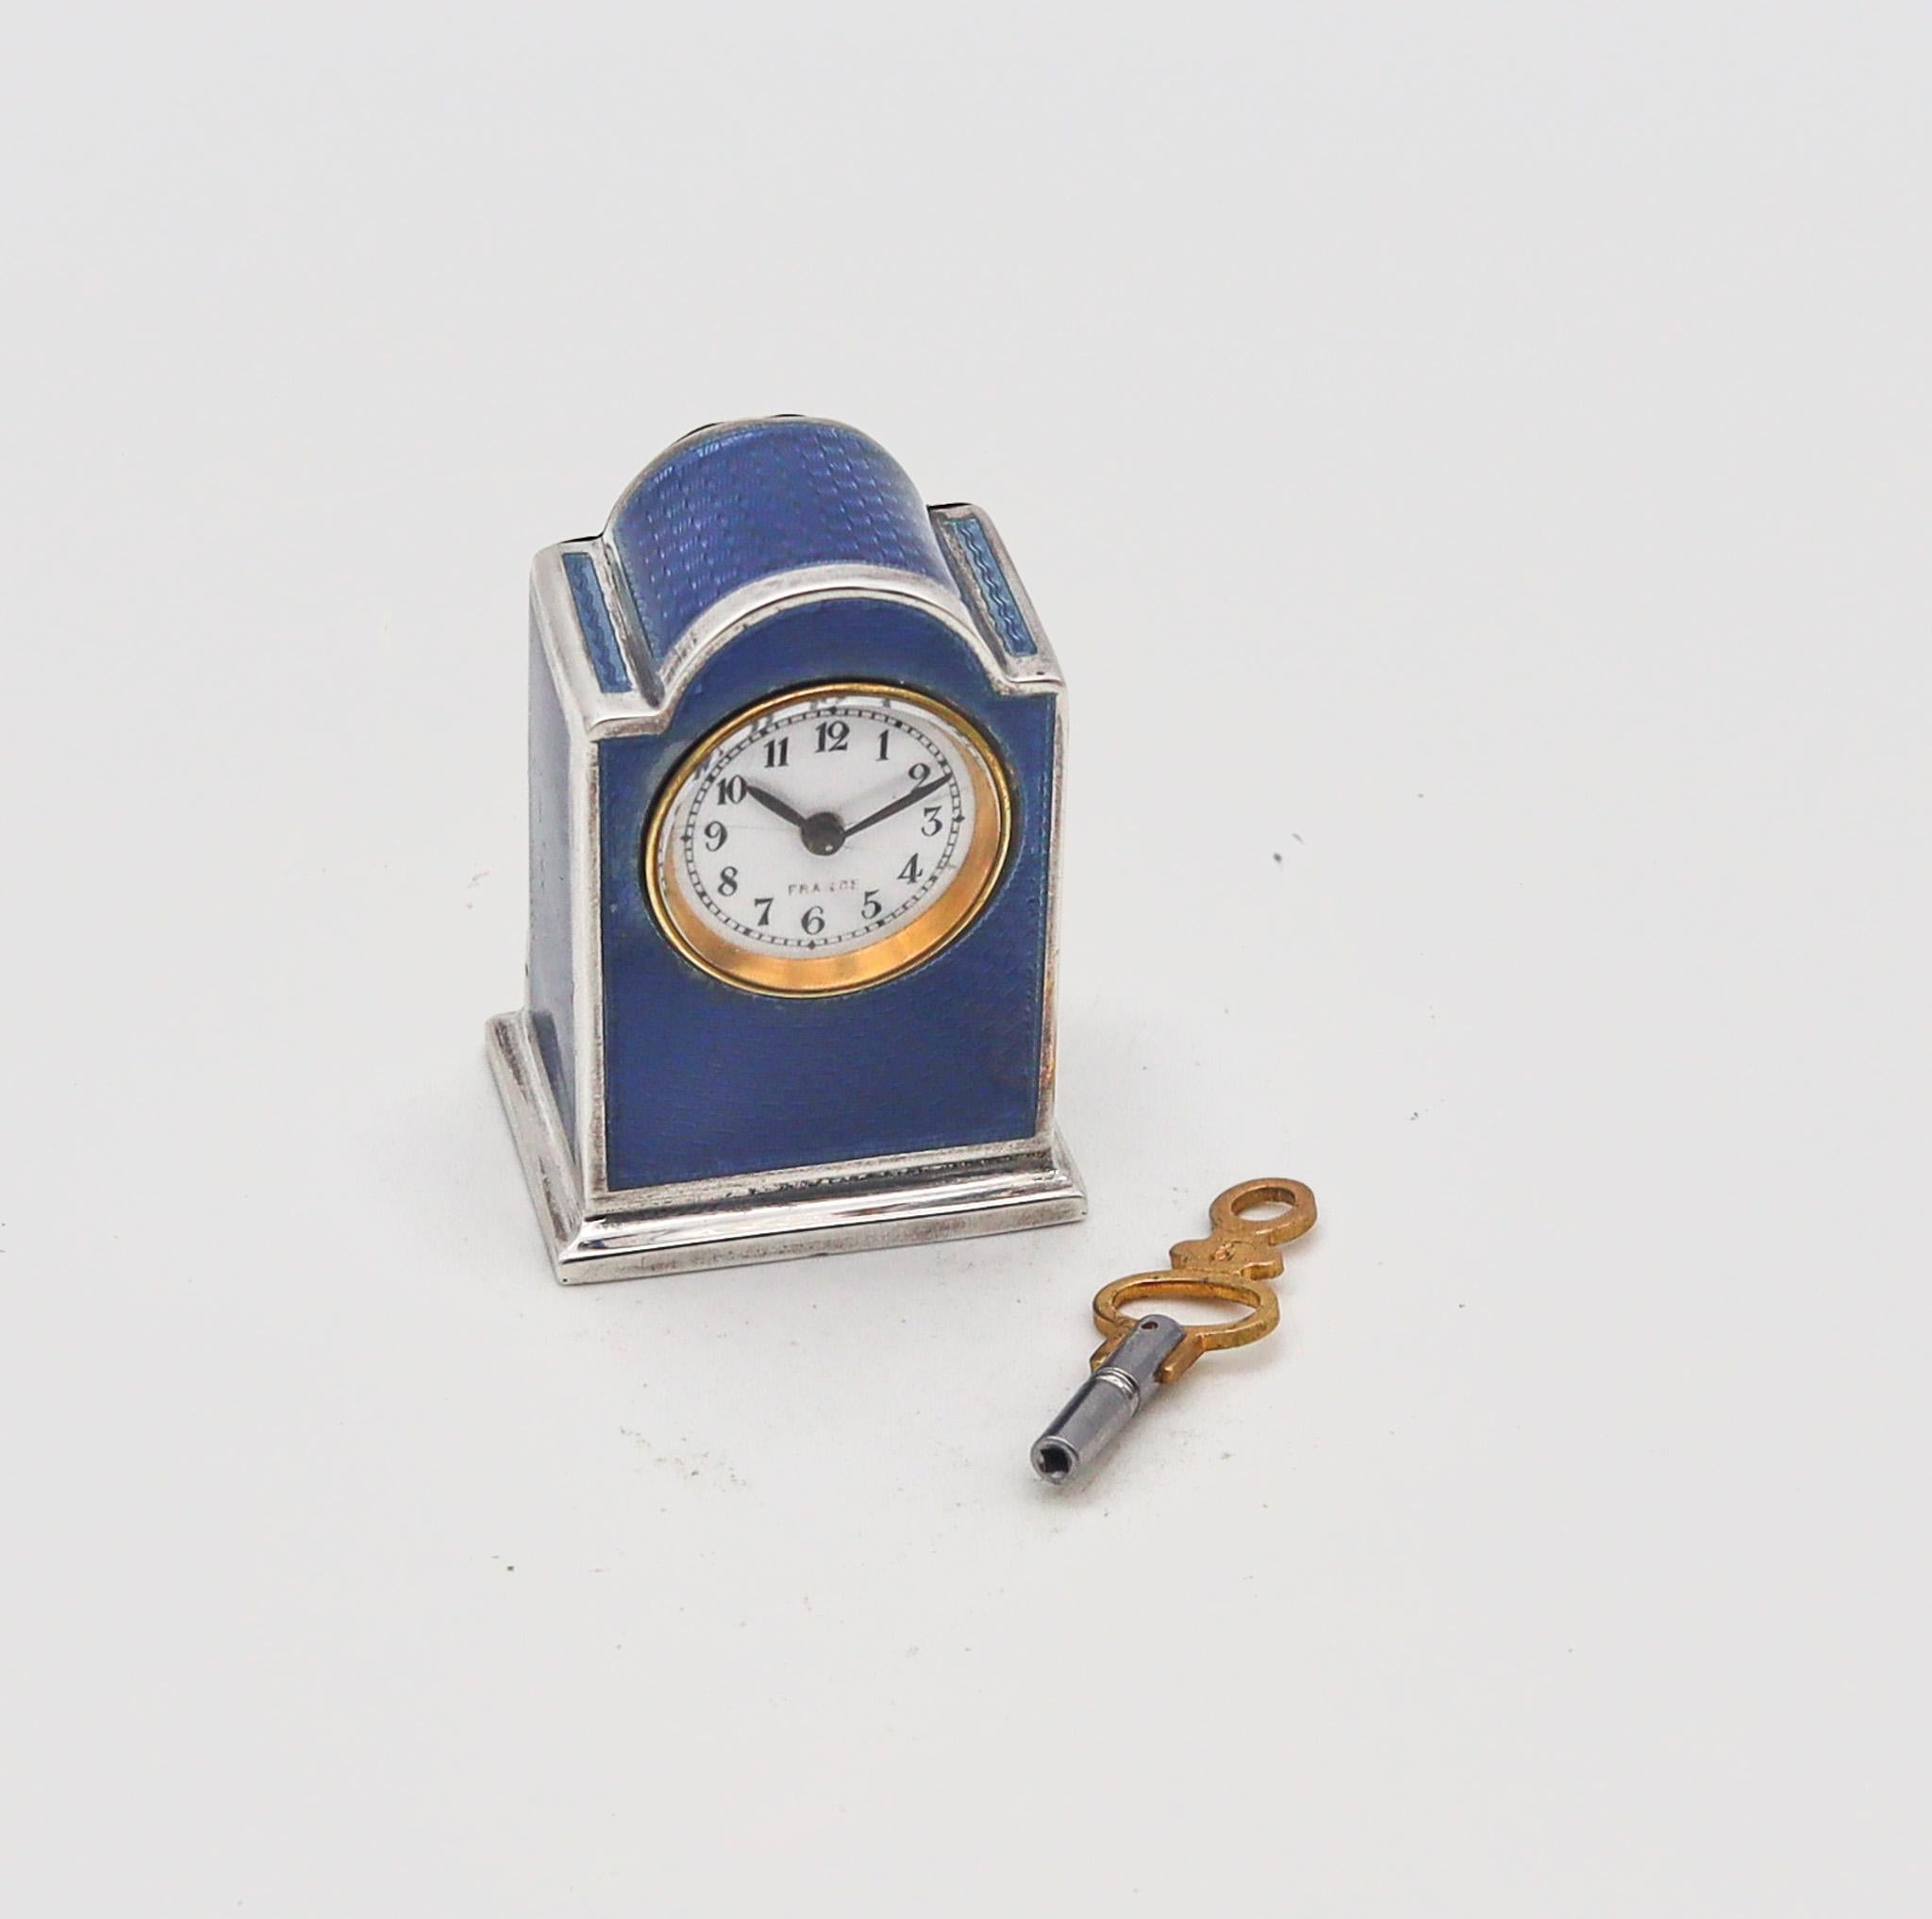 Une horloge de voyage miniature conçue par R. Vachet Paris.

Exceptionnelle et très rare pendule miniature pour voiture de voyage, fabriquée à Paris dans l'atelier de R. Vachet. Cette fabuleuse petite horloge antique a été fabriquée à la fin de la